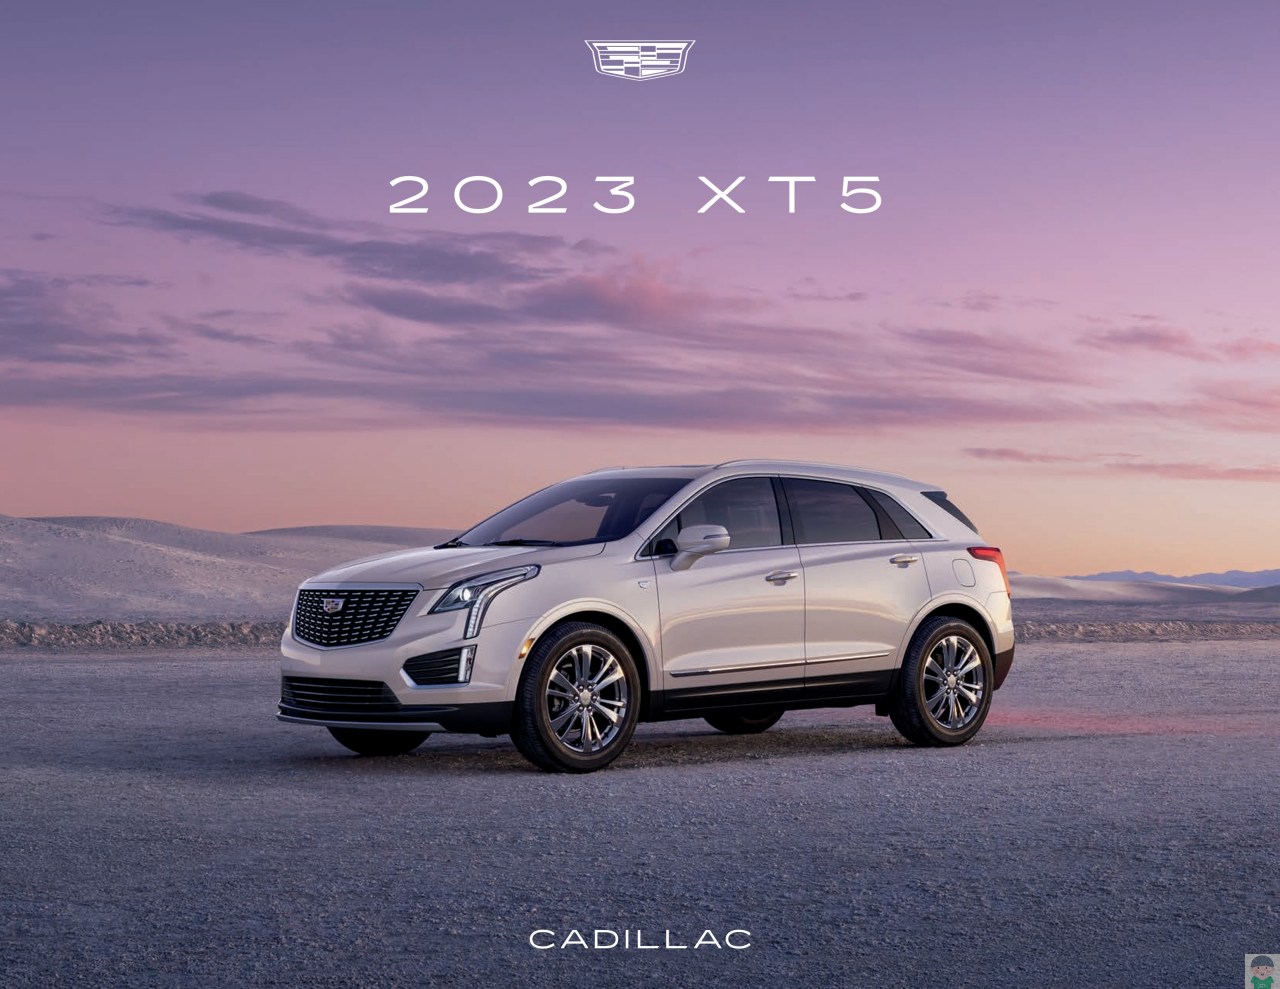 2023 캐딜락 XT5 카탈로그와 차량정보